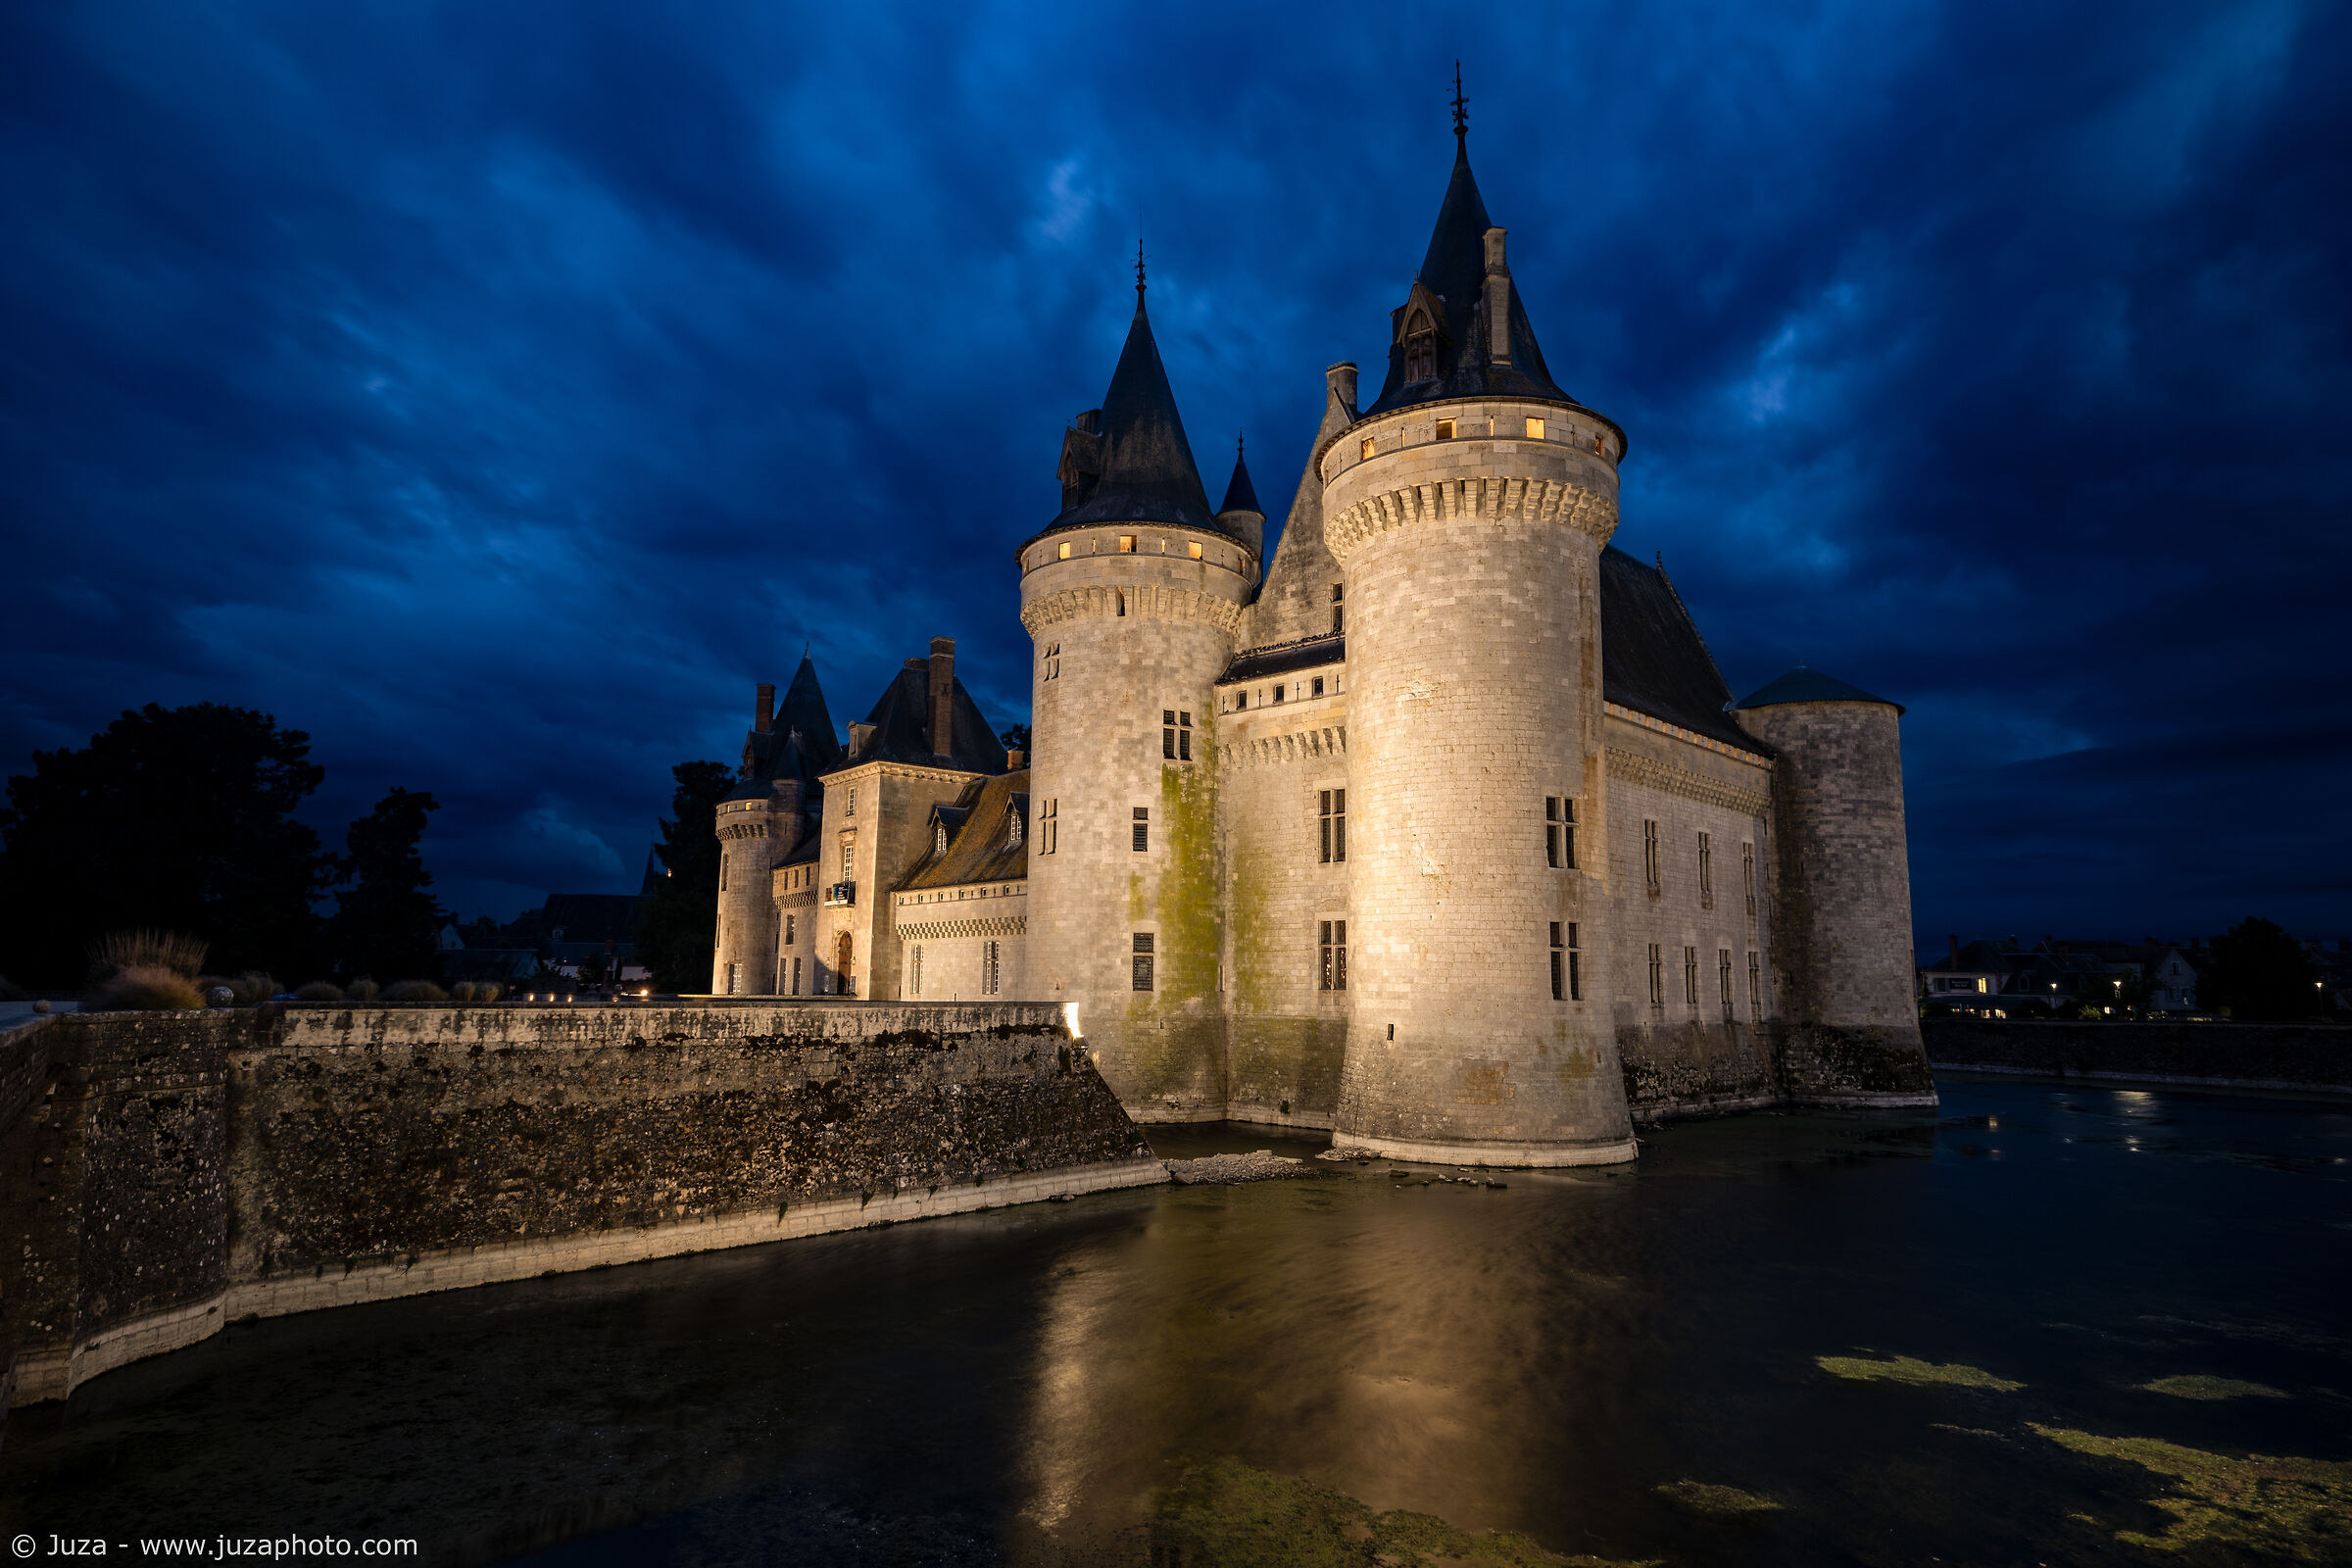 The Château de Sully-sur-Loire...